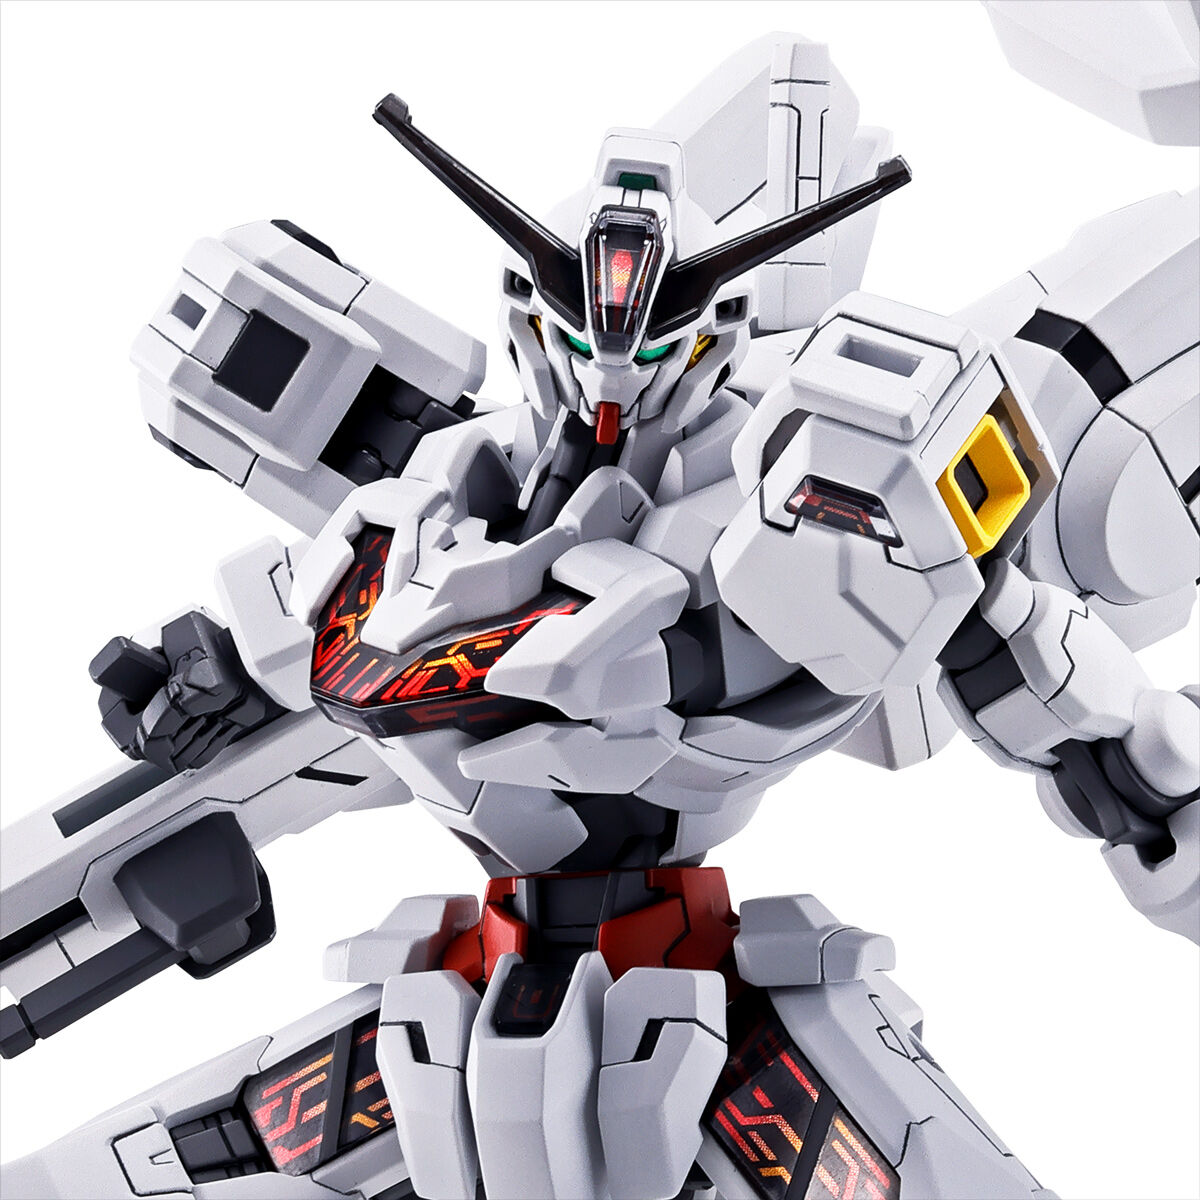 HGWM 1/144 X-EX01 Gundam Calibarn(Permet Score Five)